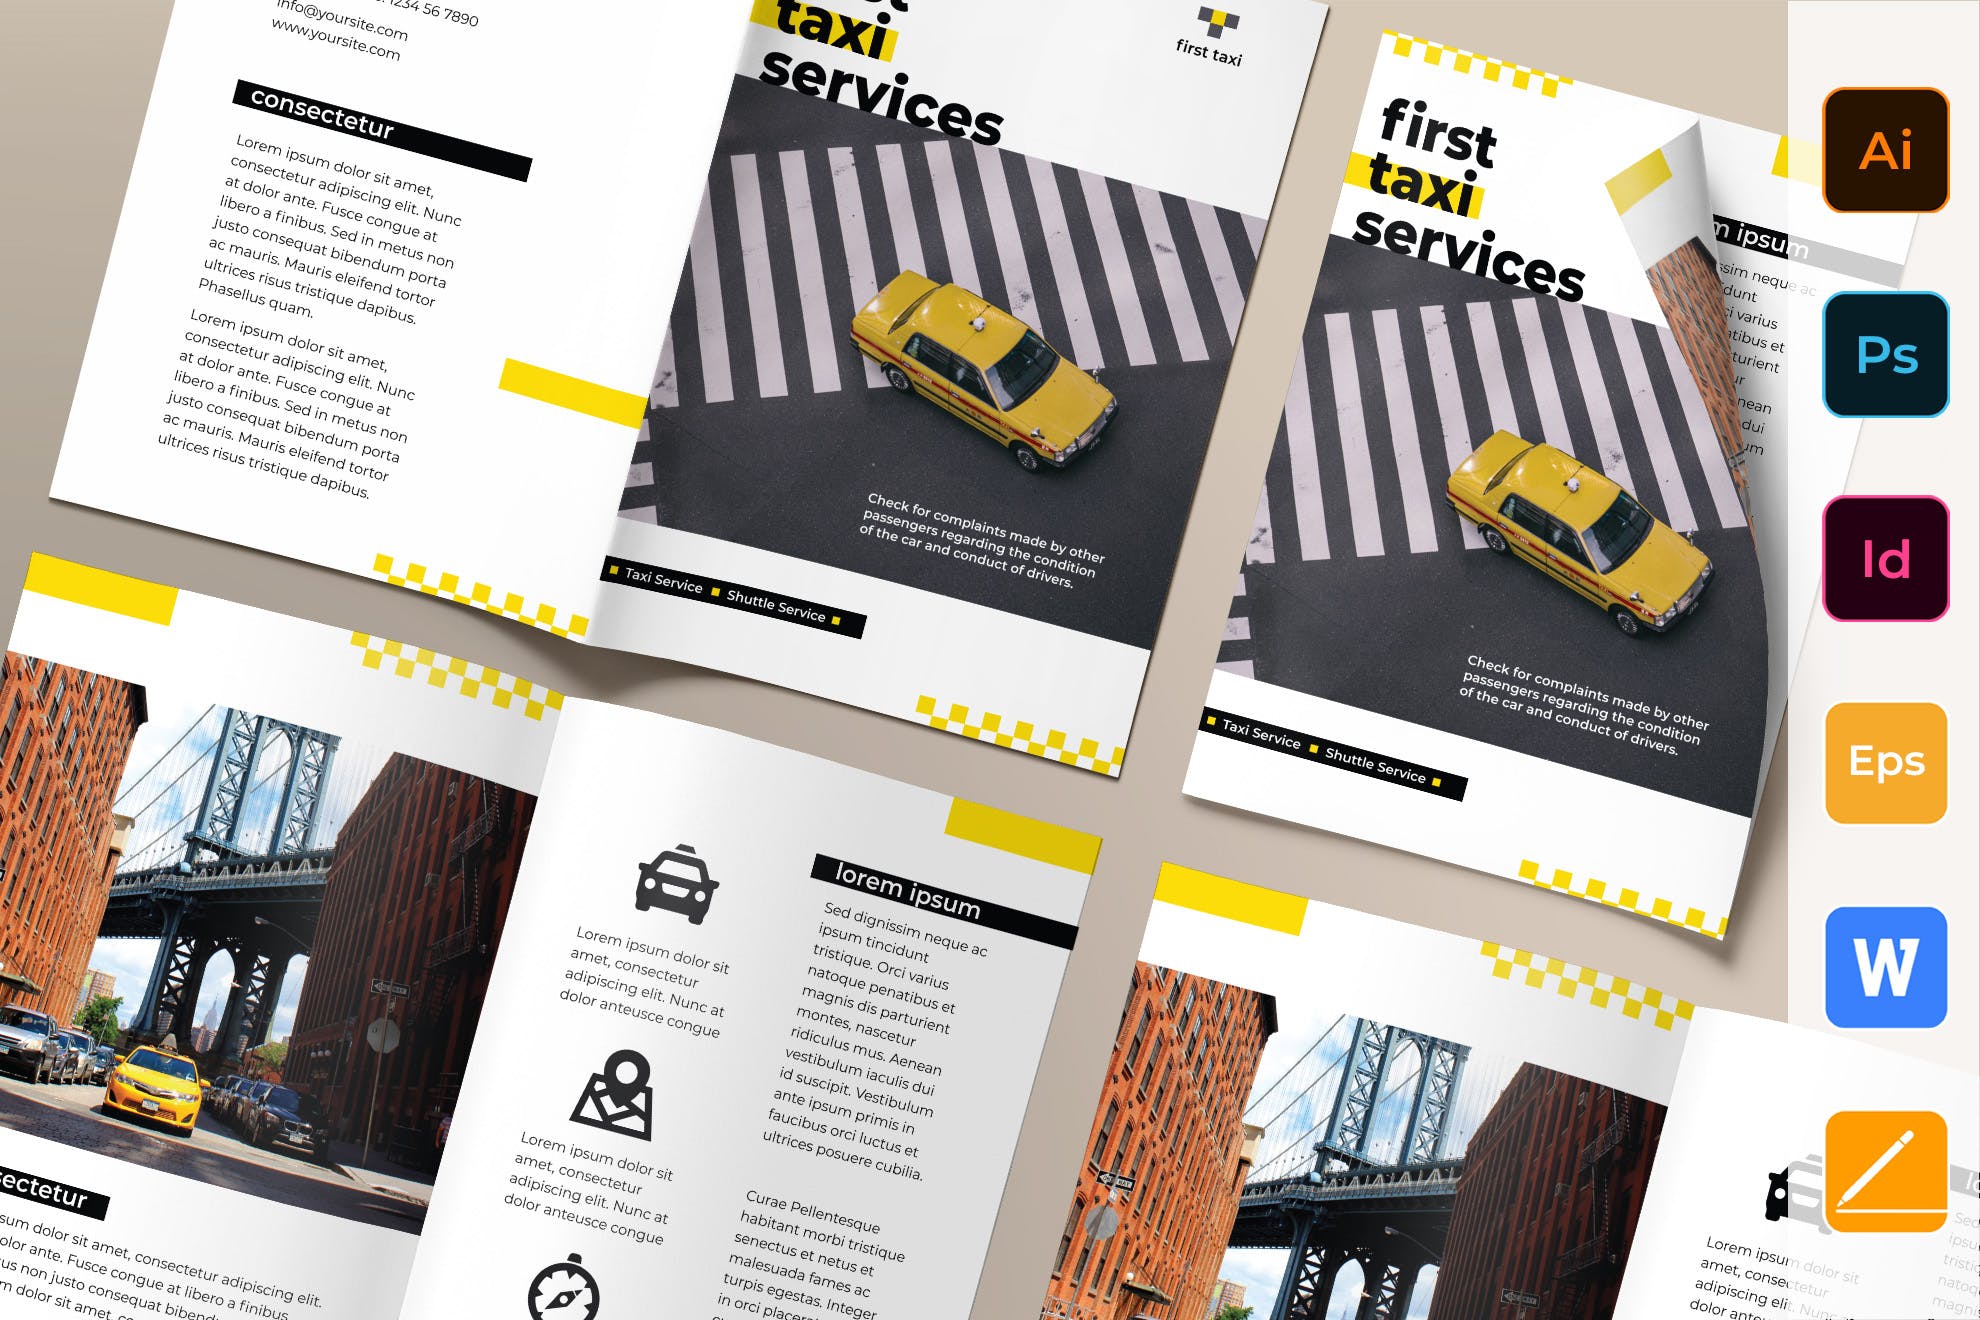 出租车/网约车服务对折宣传册设计模板 Taxi Services Brochure Bifold插图